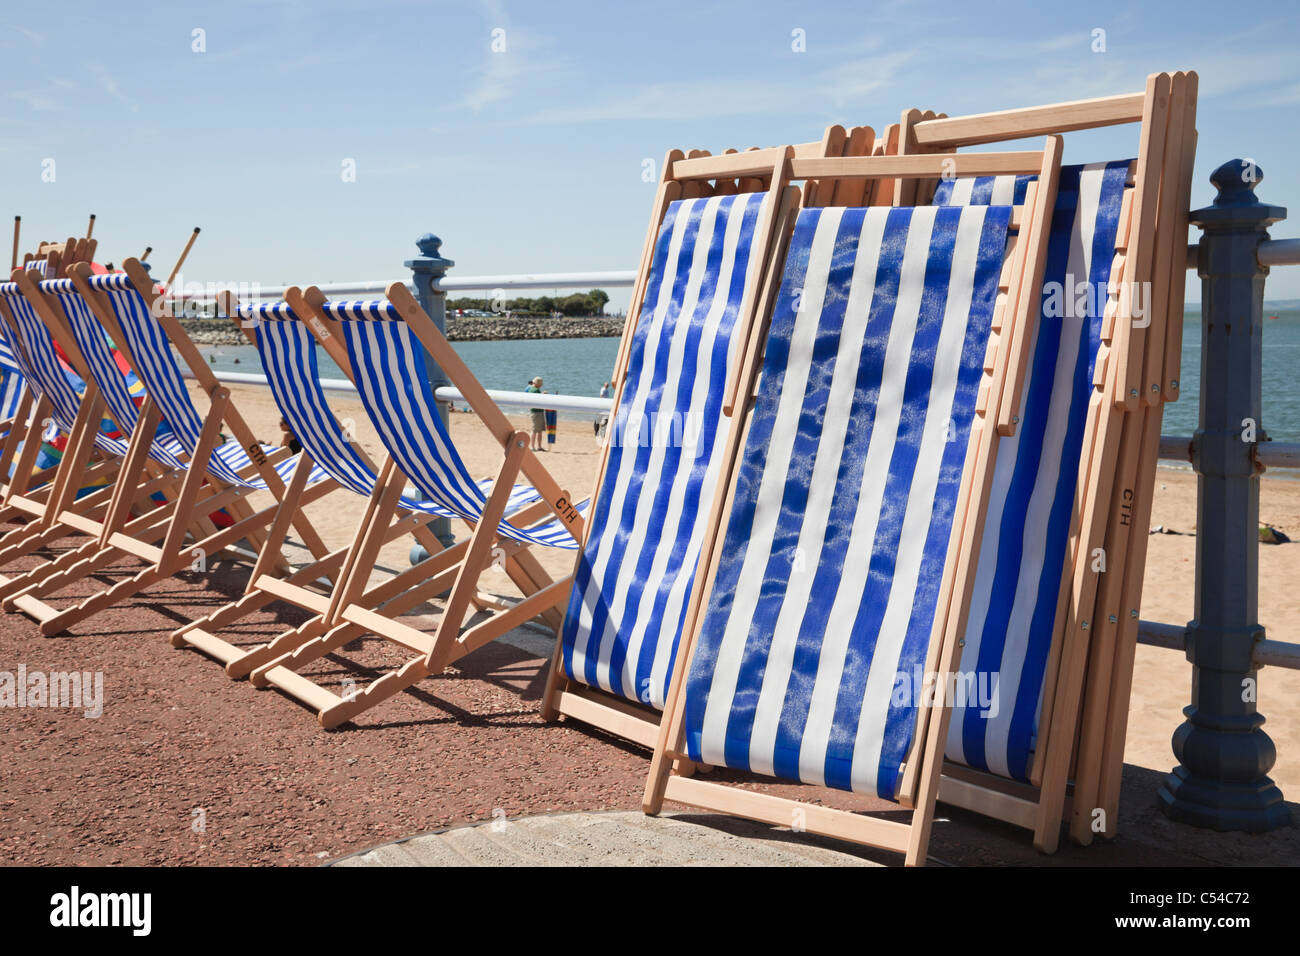 Sedie a sdraio a strisce bianche e blu a noleggio su una passeggiata sul lungomare sulla spiaggia a metà estate. Morecambe, Lancashire, Inghilterra, Regno Unito. Foto Stock